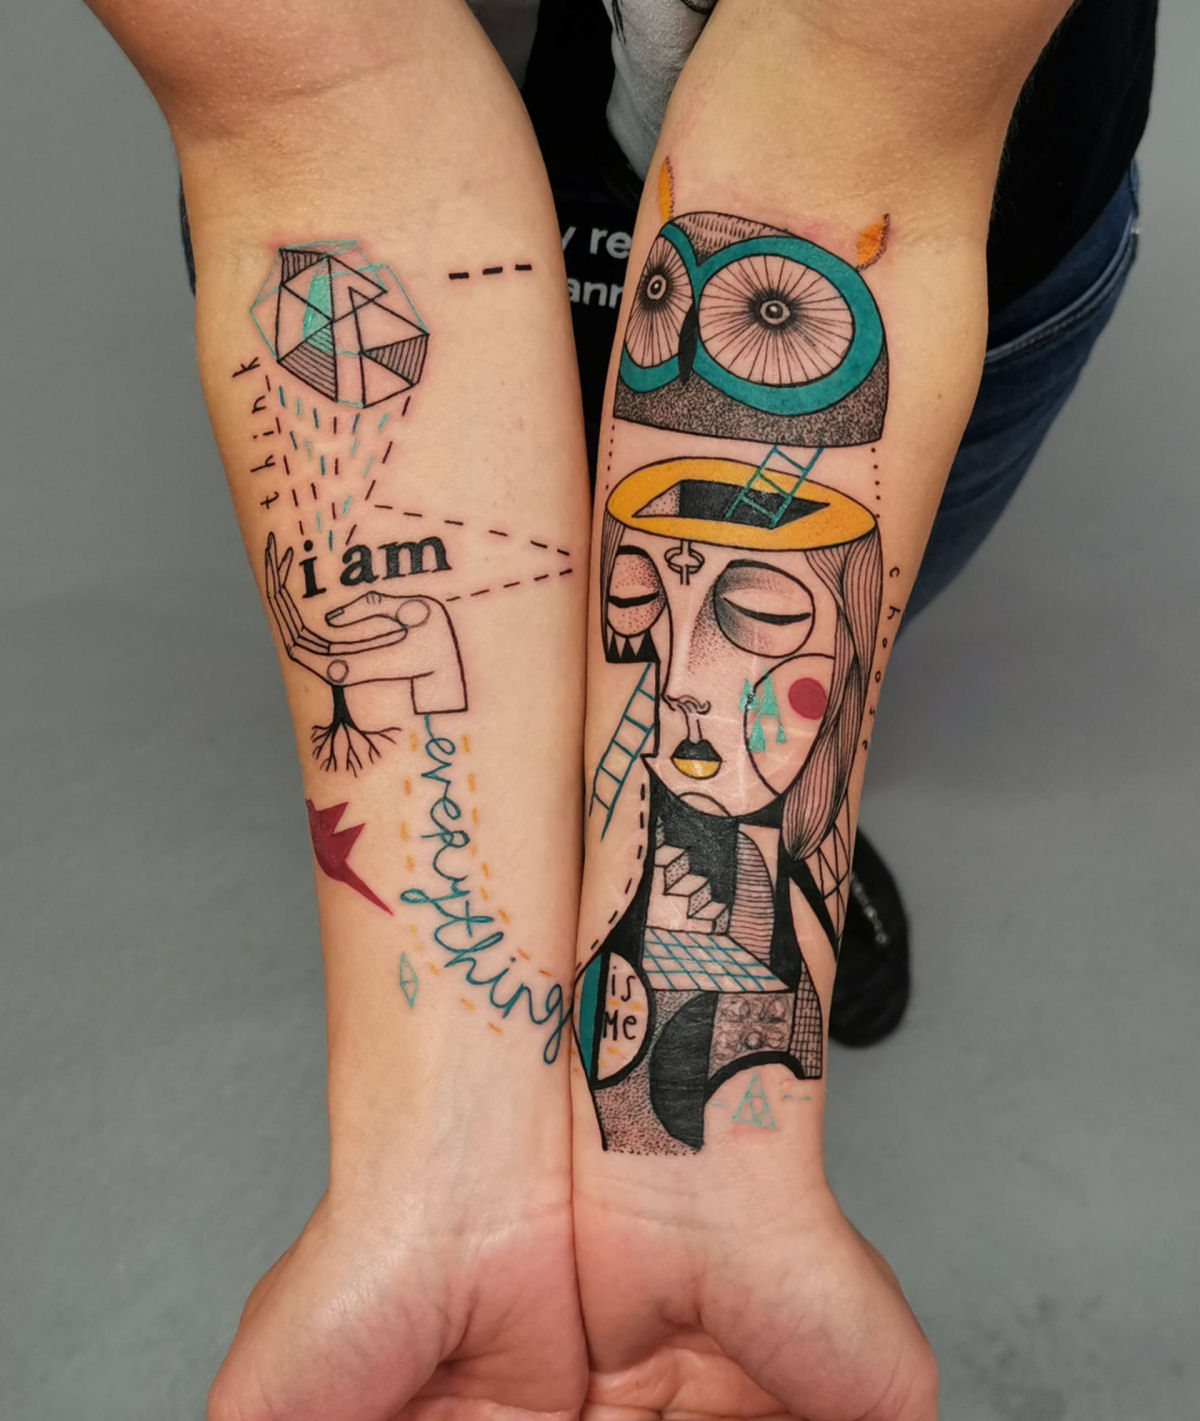 Tatuagens combinam figuras fragmentadas e detalhes geométricos em composições surreais 05